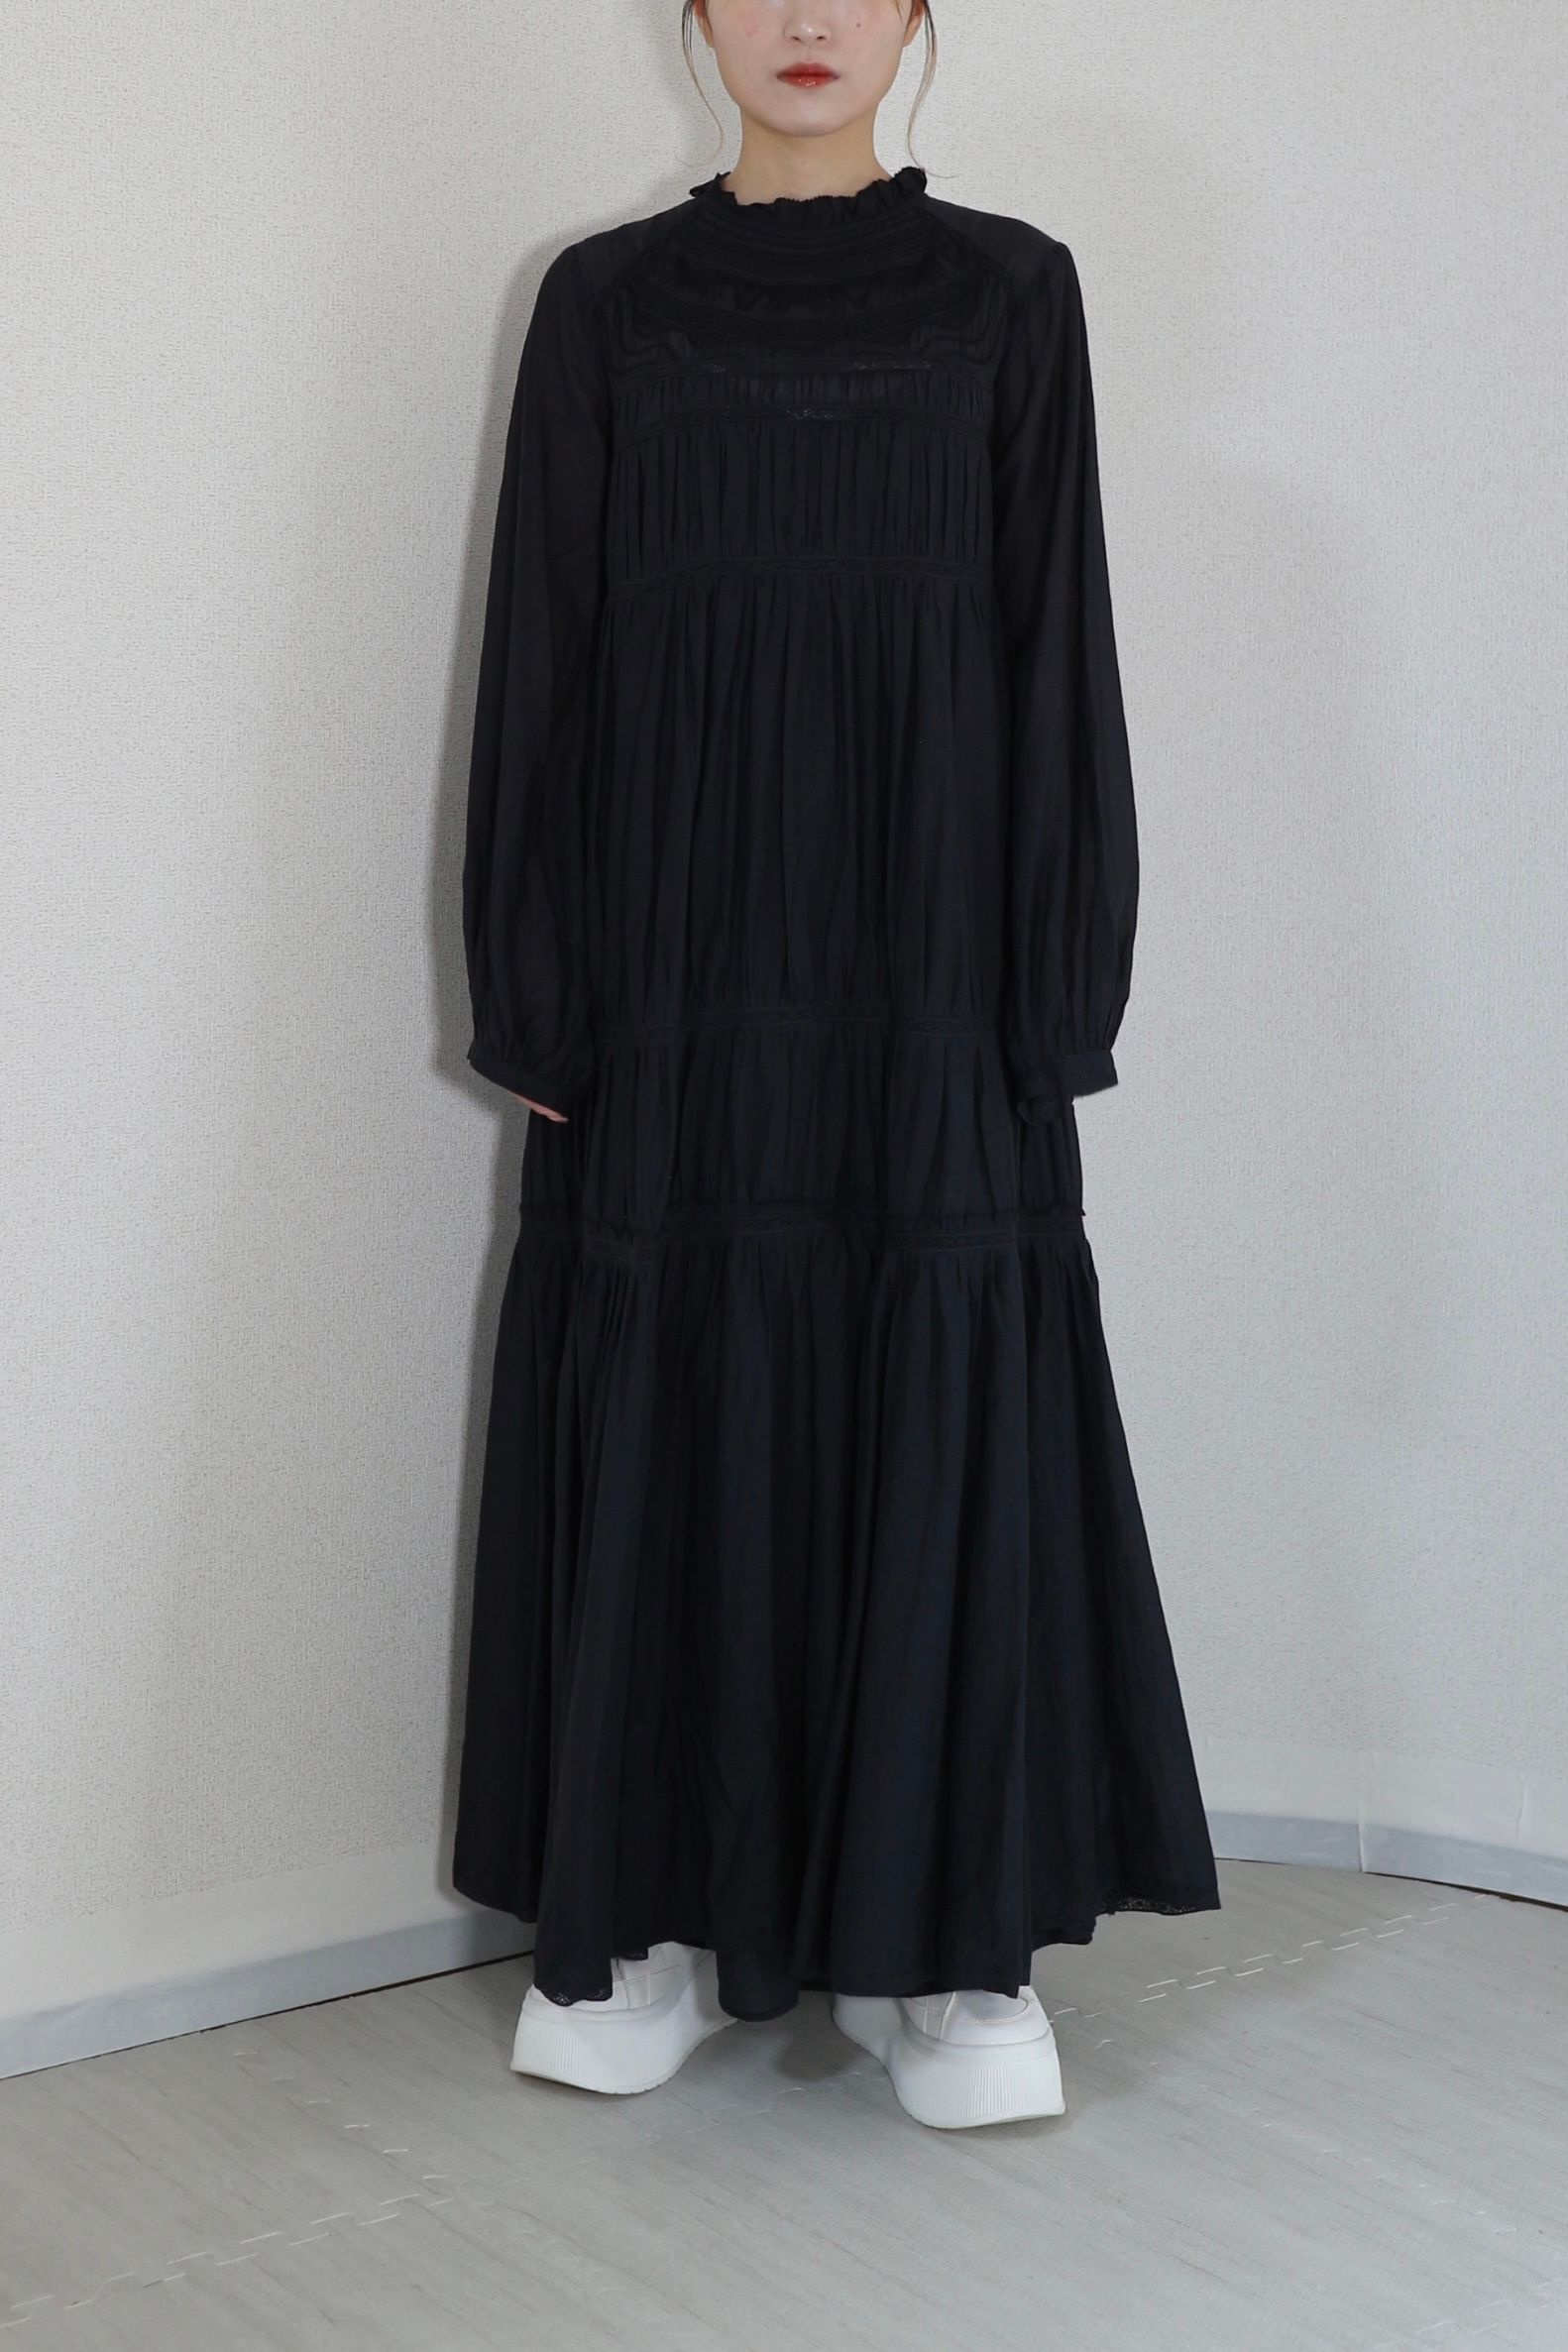 【復刻アイテム】 EMBROIDERY LONG DRESS / エンブロイダリーロングドレス (ネイビー) 刺繍レース - フリーサイズ